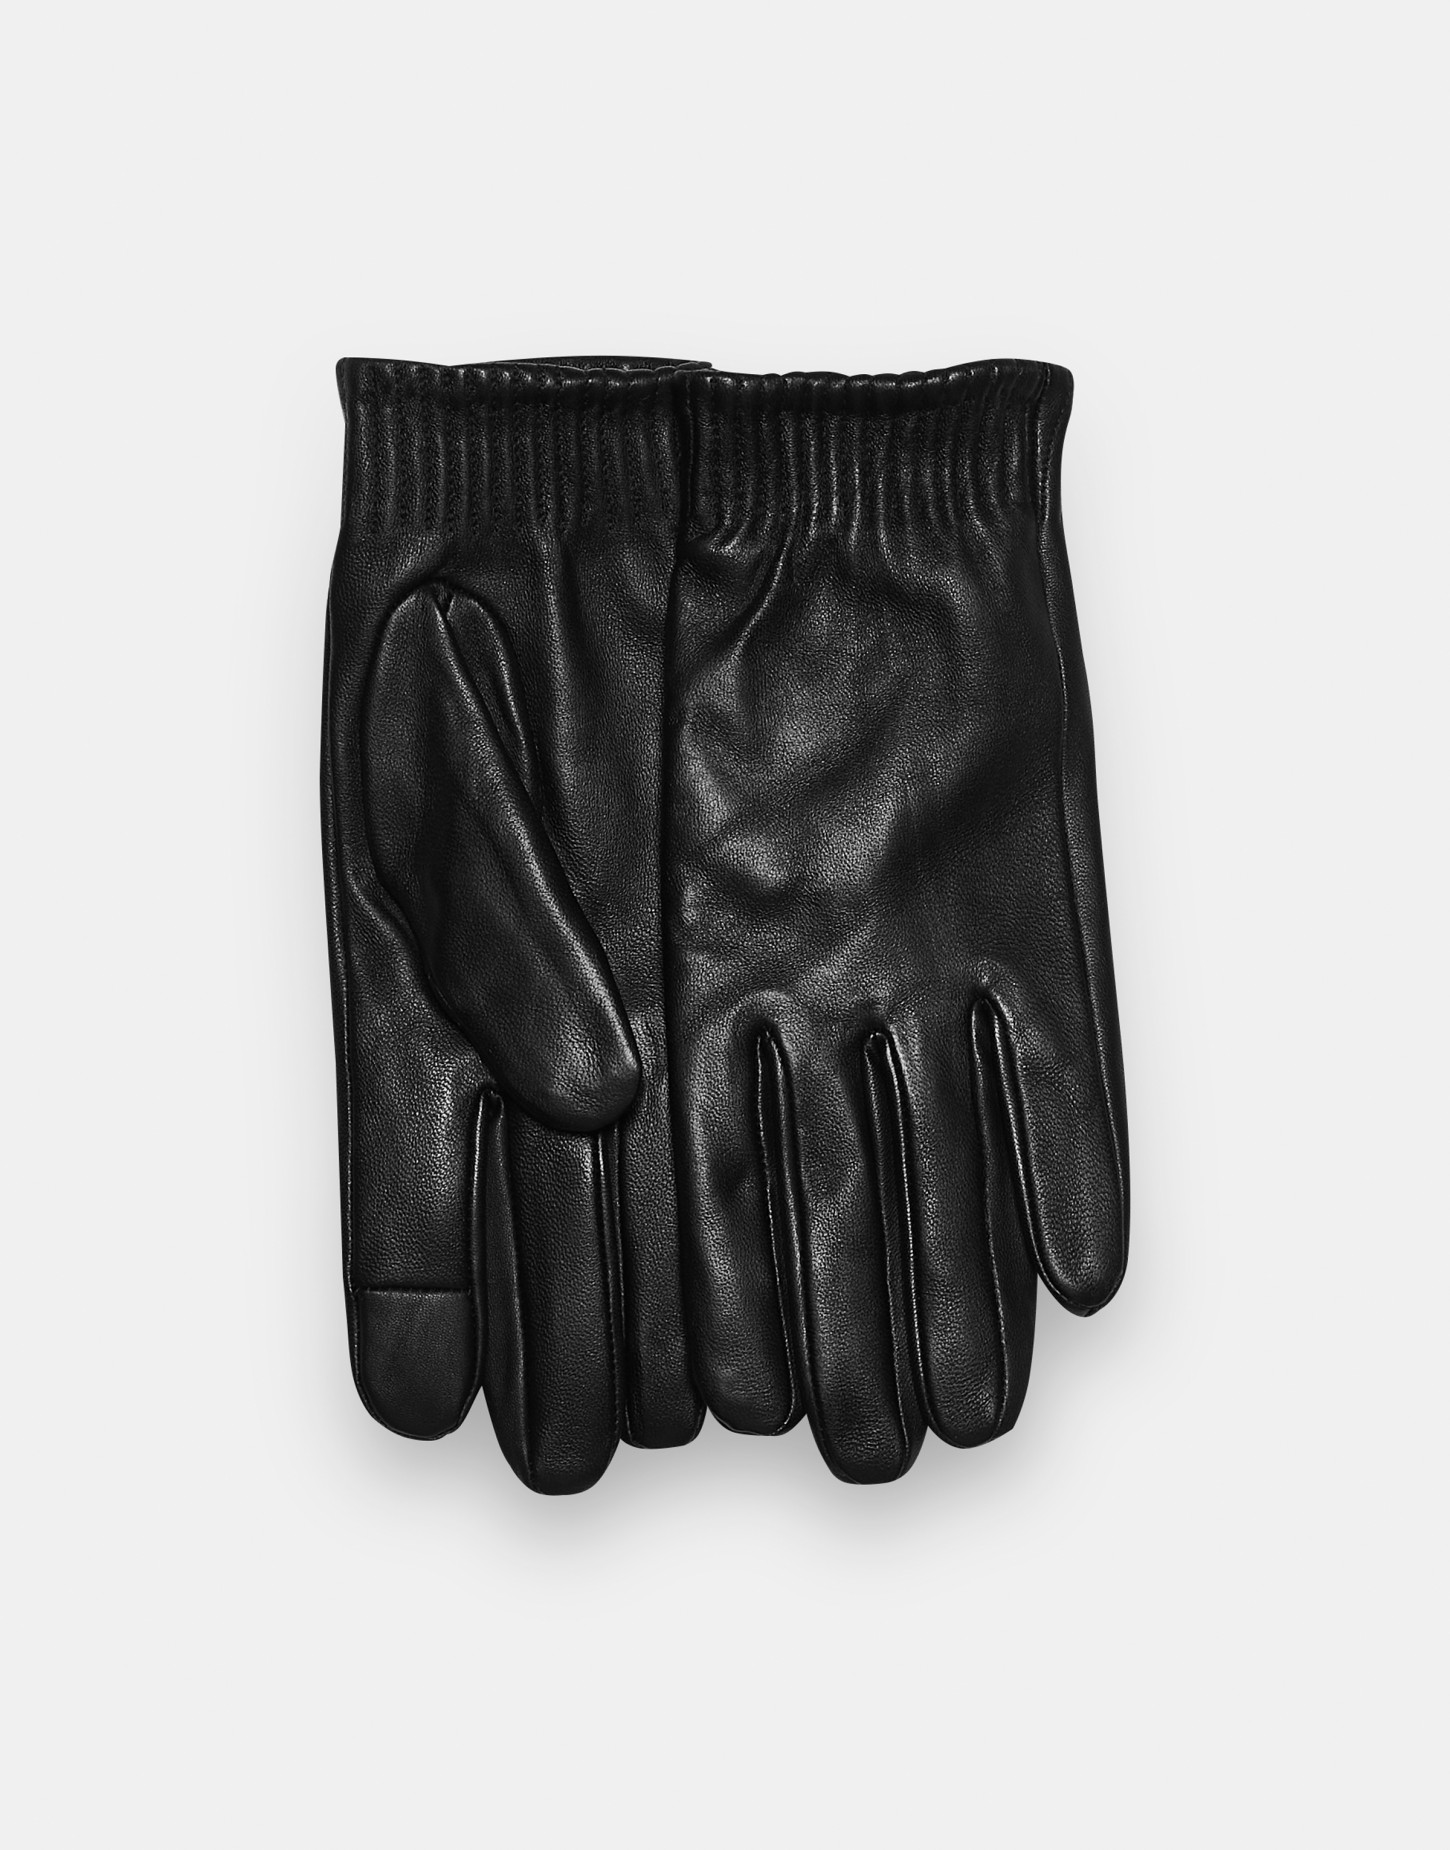 Belua gloves